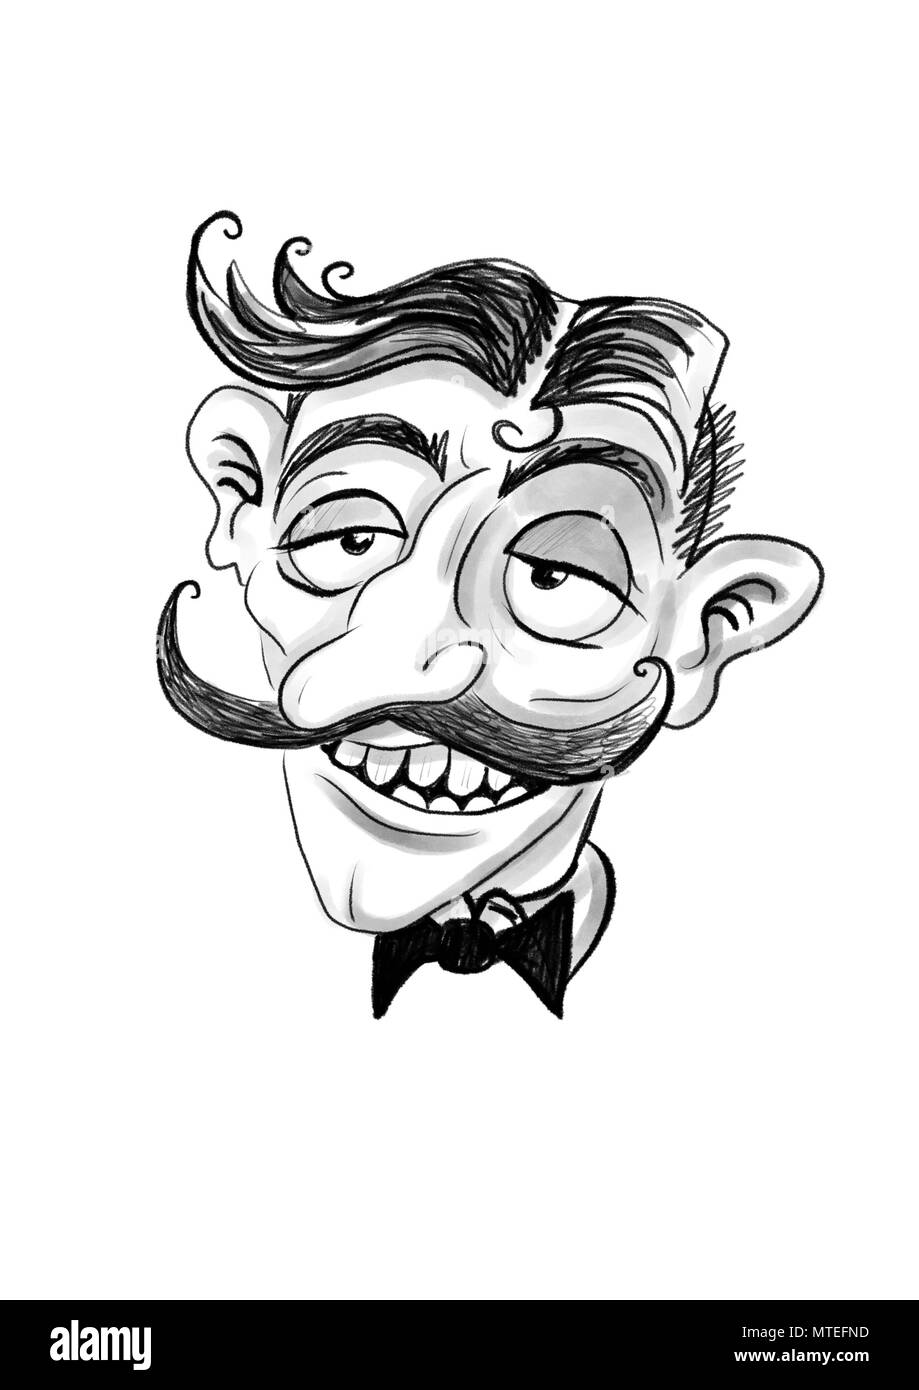 Un cartone animato di un uomo con i baffi Foto Stock